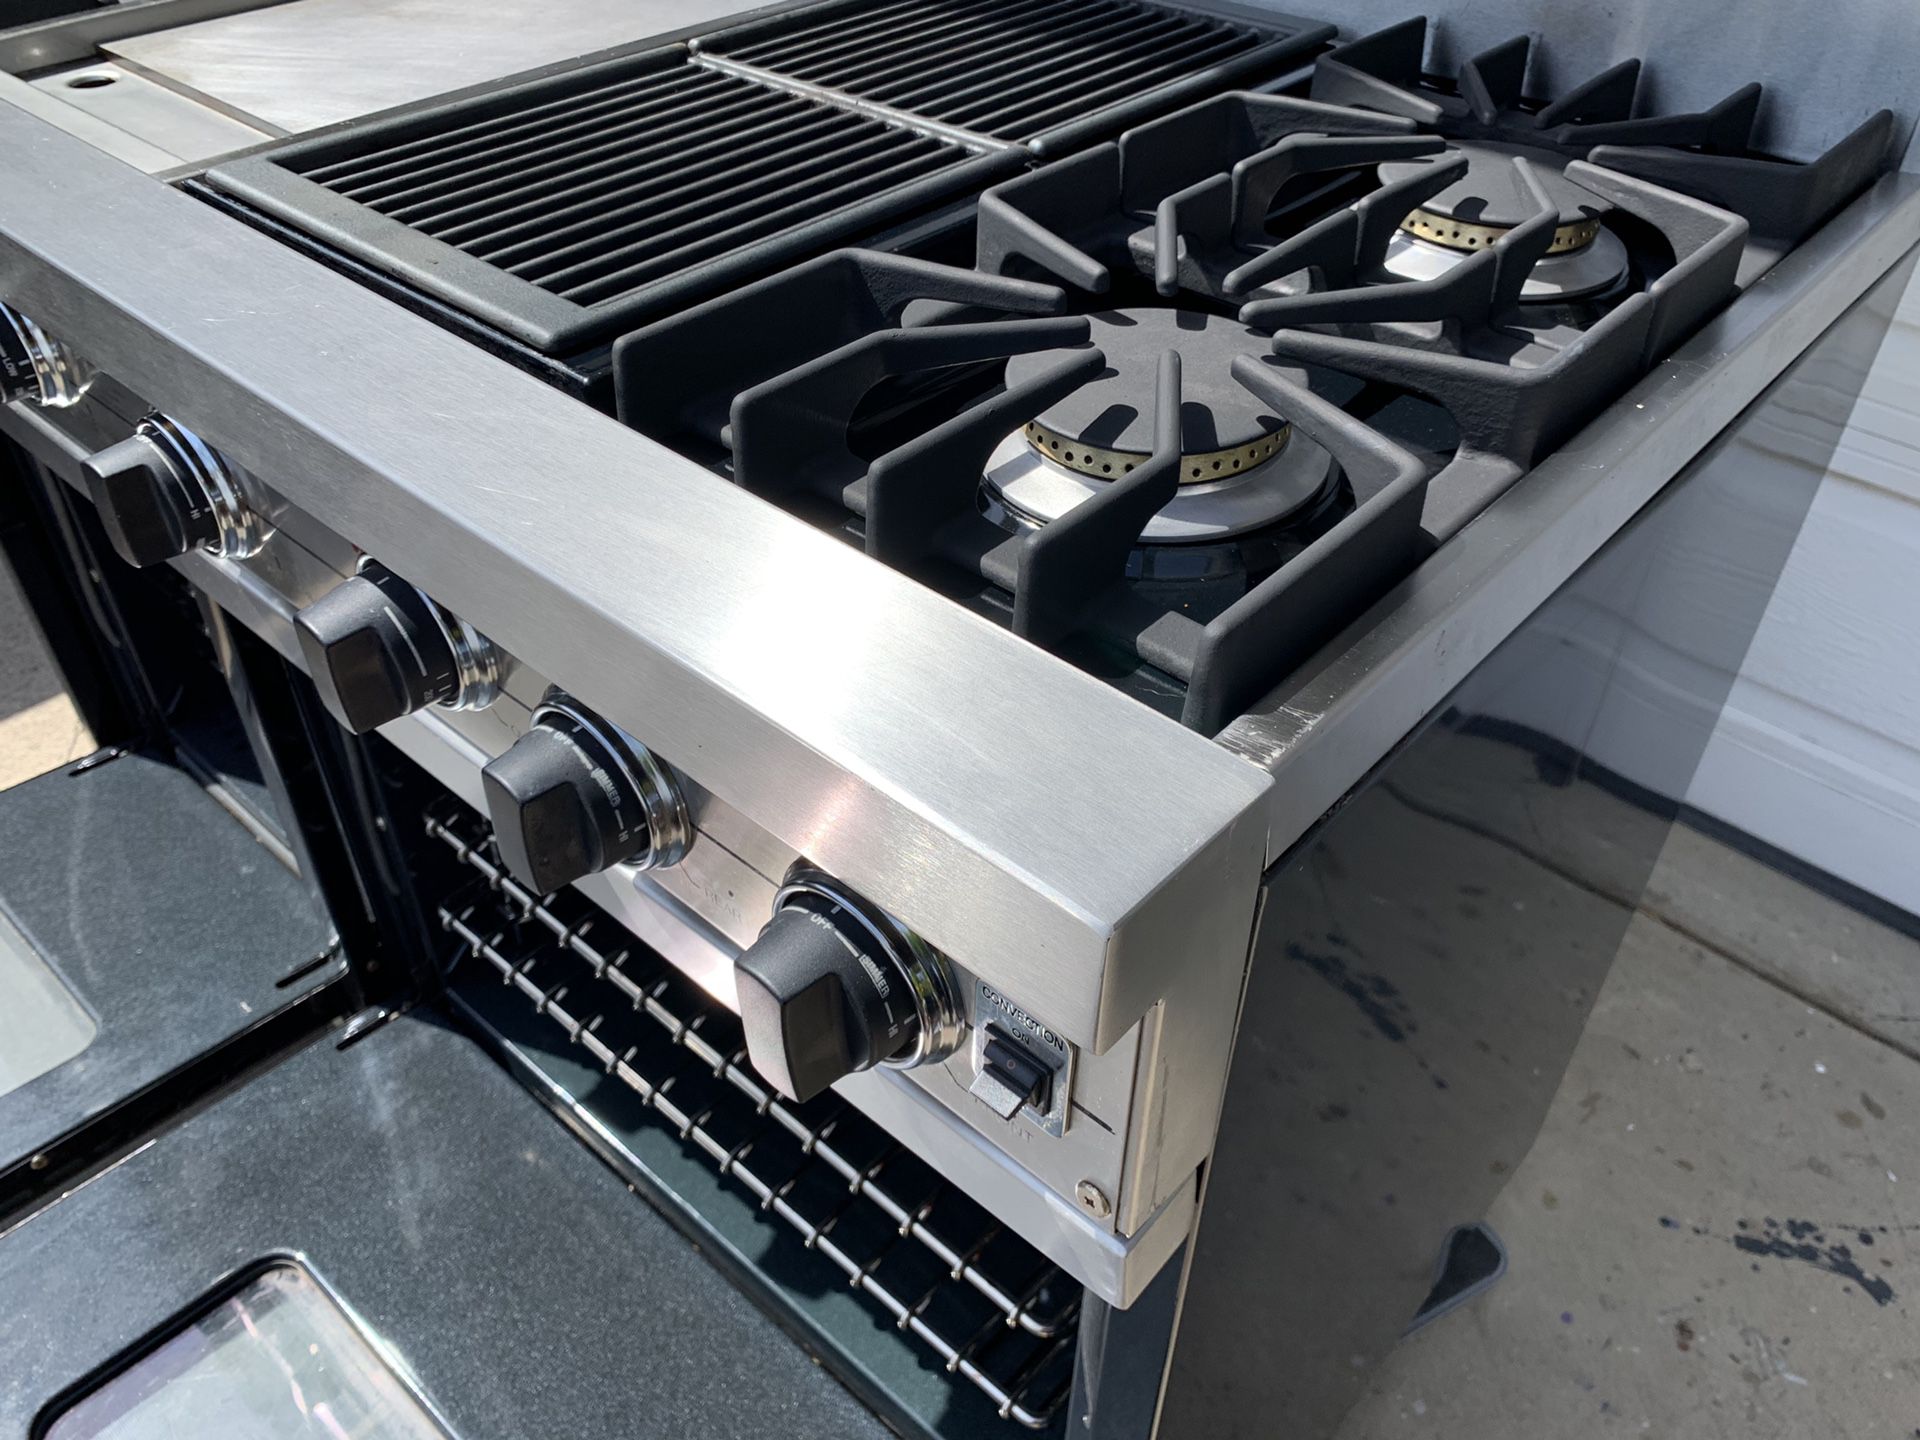 Viking 48” Range with Stainless backsplash 2 oven, 4 burner, grill &  griddle - appliances - by owner - sale - craigslist